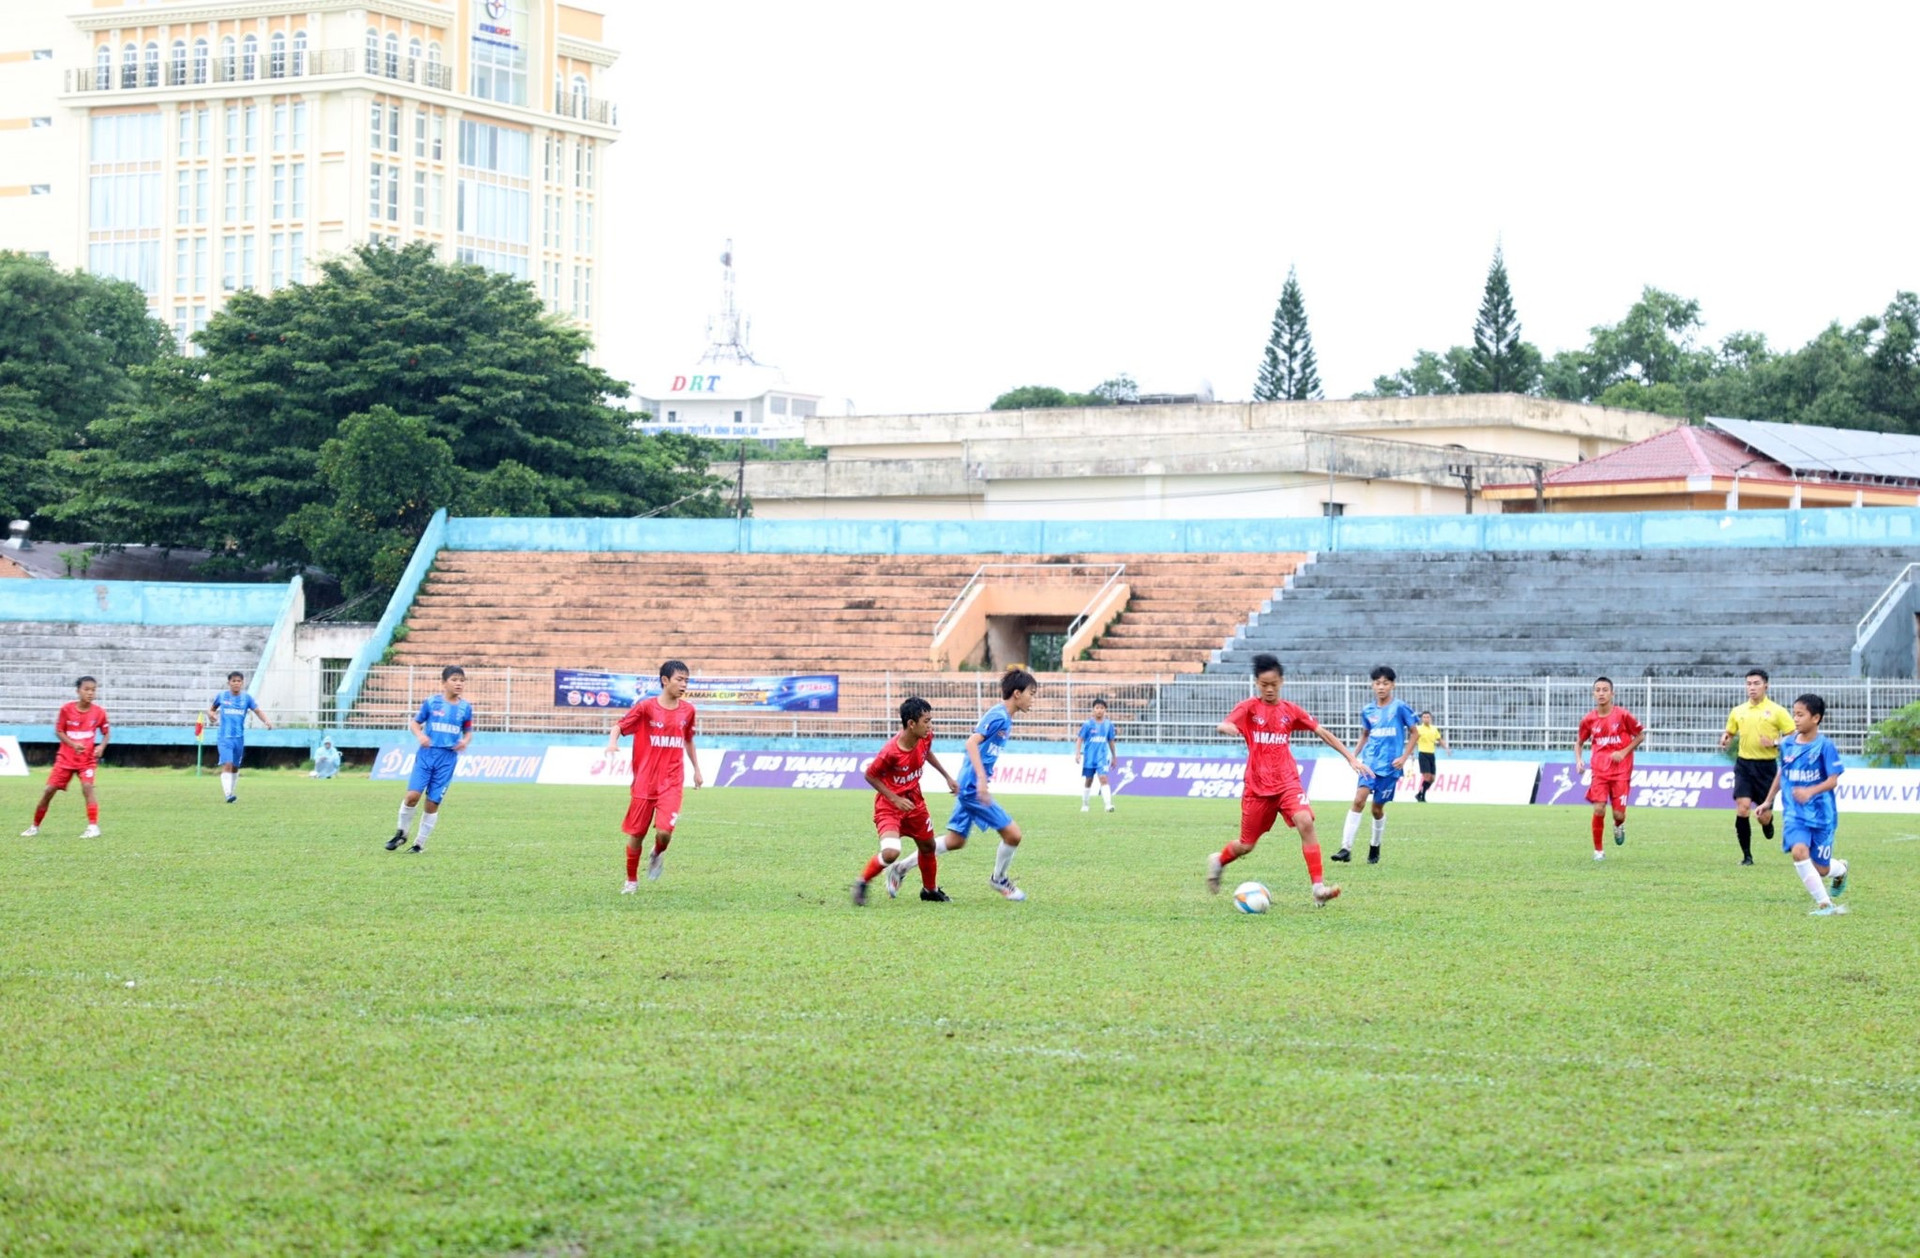 Sau lễ khai mạc, trận đấu giữa U13 Đắk Lắk gặp U13 Khánh Hòa diễn ra sôi nổi. Ảnh BTC